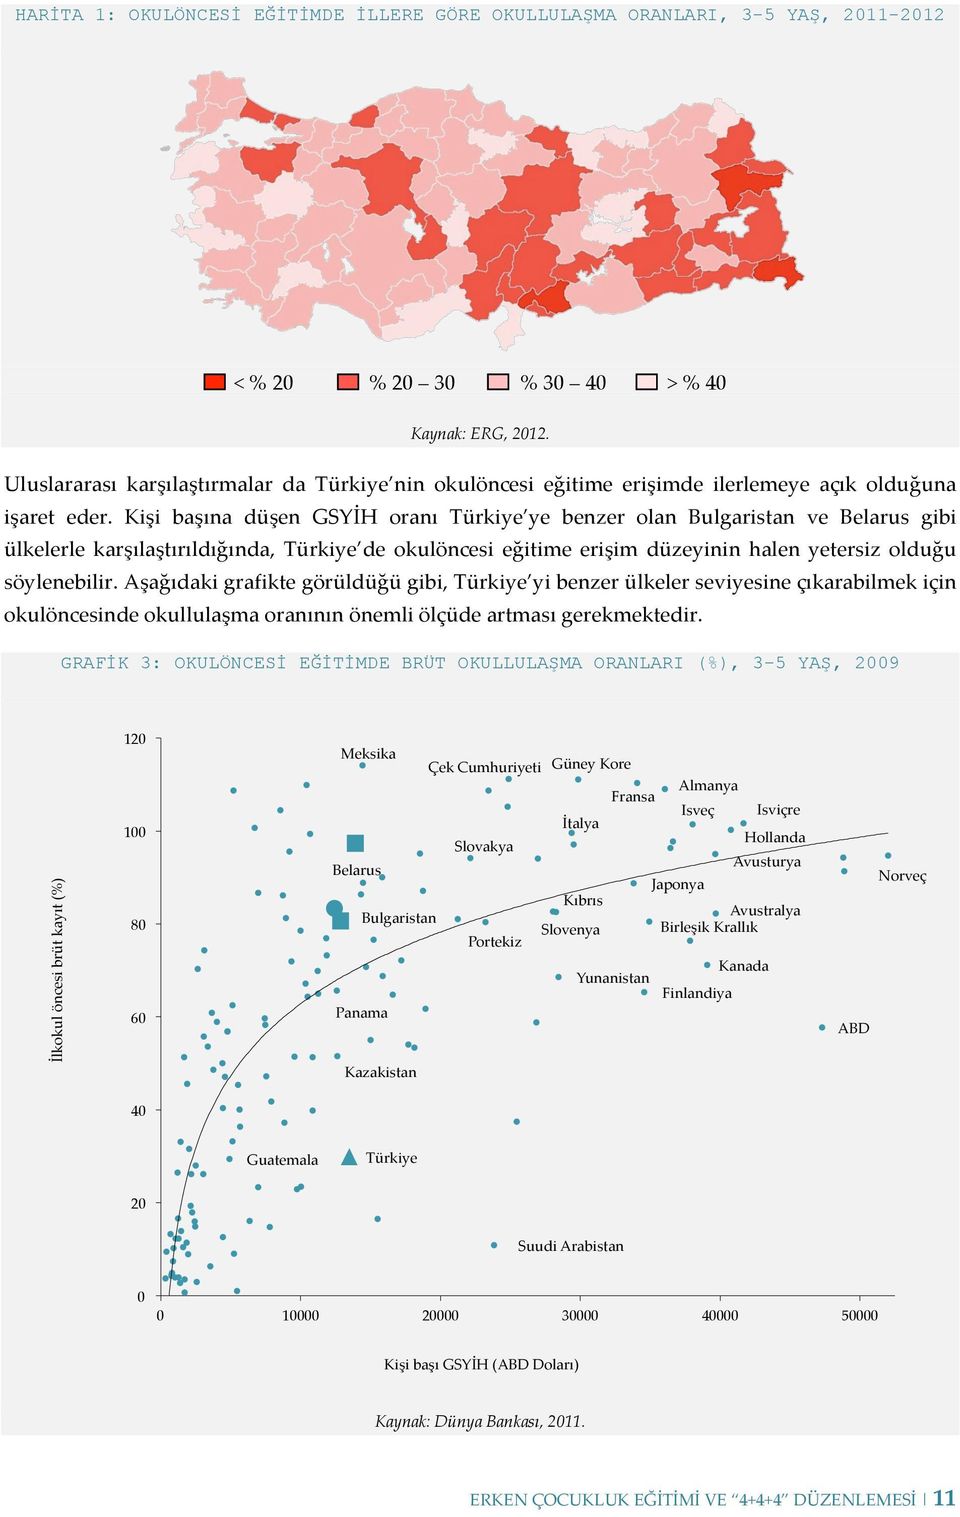 Kişi başına düşen GSYİH oranı Türkiye ye benzer olan Bulgaristan ve Belarus gibi ülkelerle karşılaştırıldığında, Türkiye de okulöncesi eğitime erişim düzeyinin halen yetersiz olduğu söylenebilir.